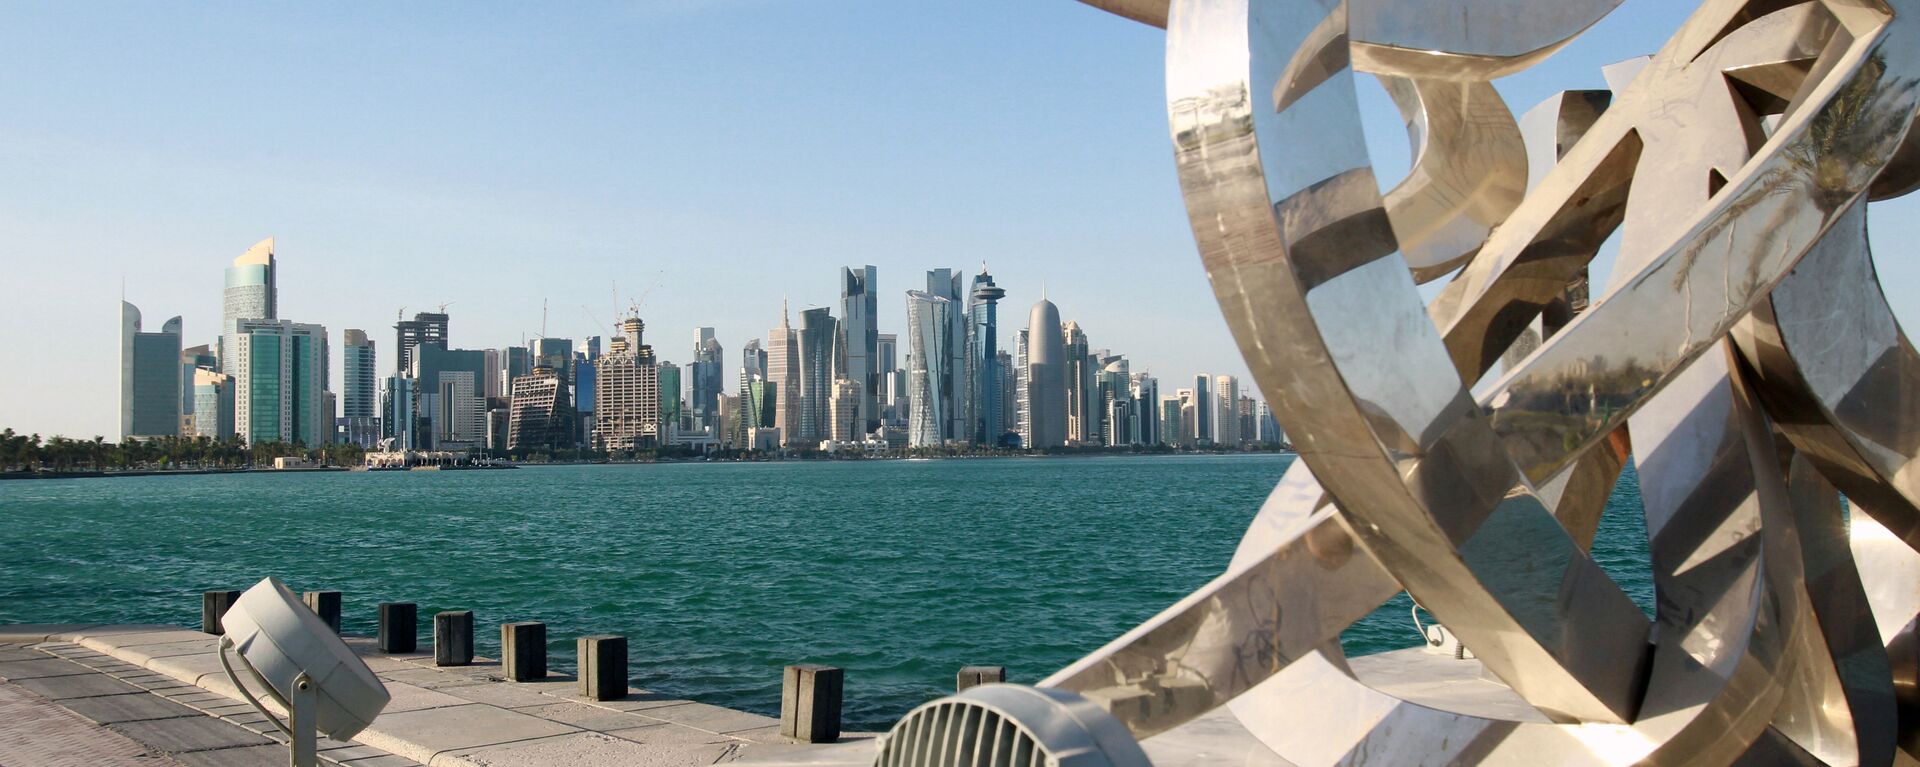 مناظر عامة للمدن العربية - الدوحة، قطر 5 يونيو 2017 - سبوتنيك عربي, 1920, 12.06.2021